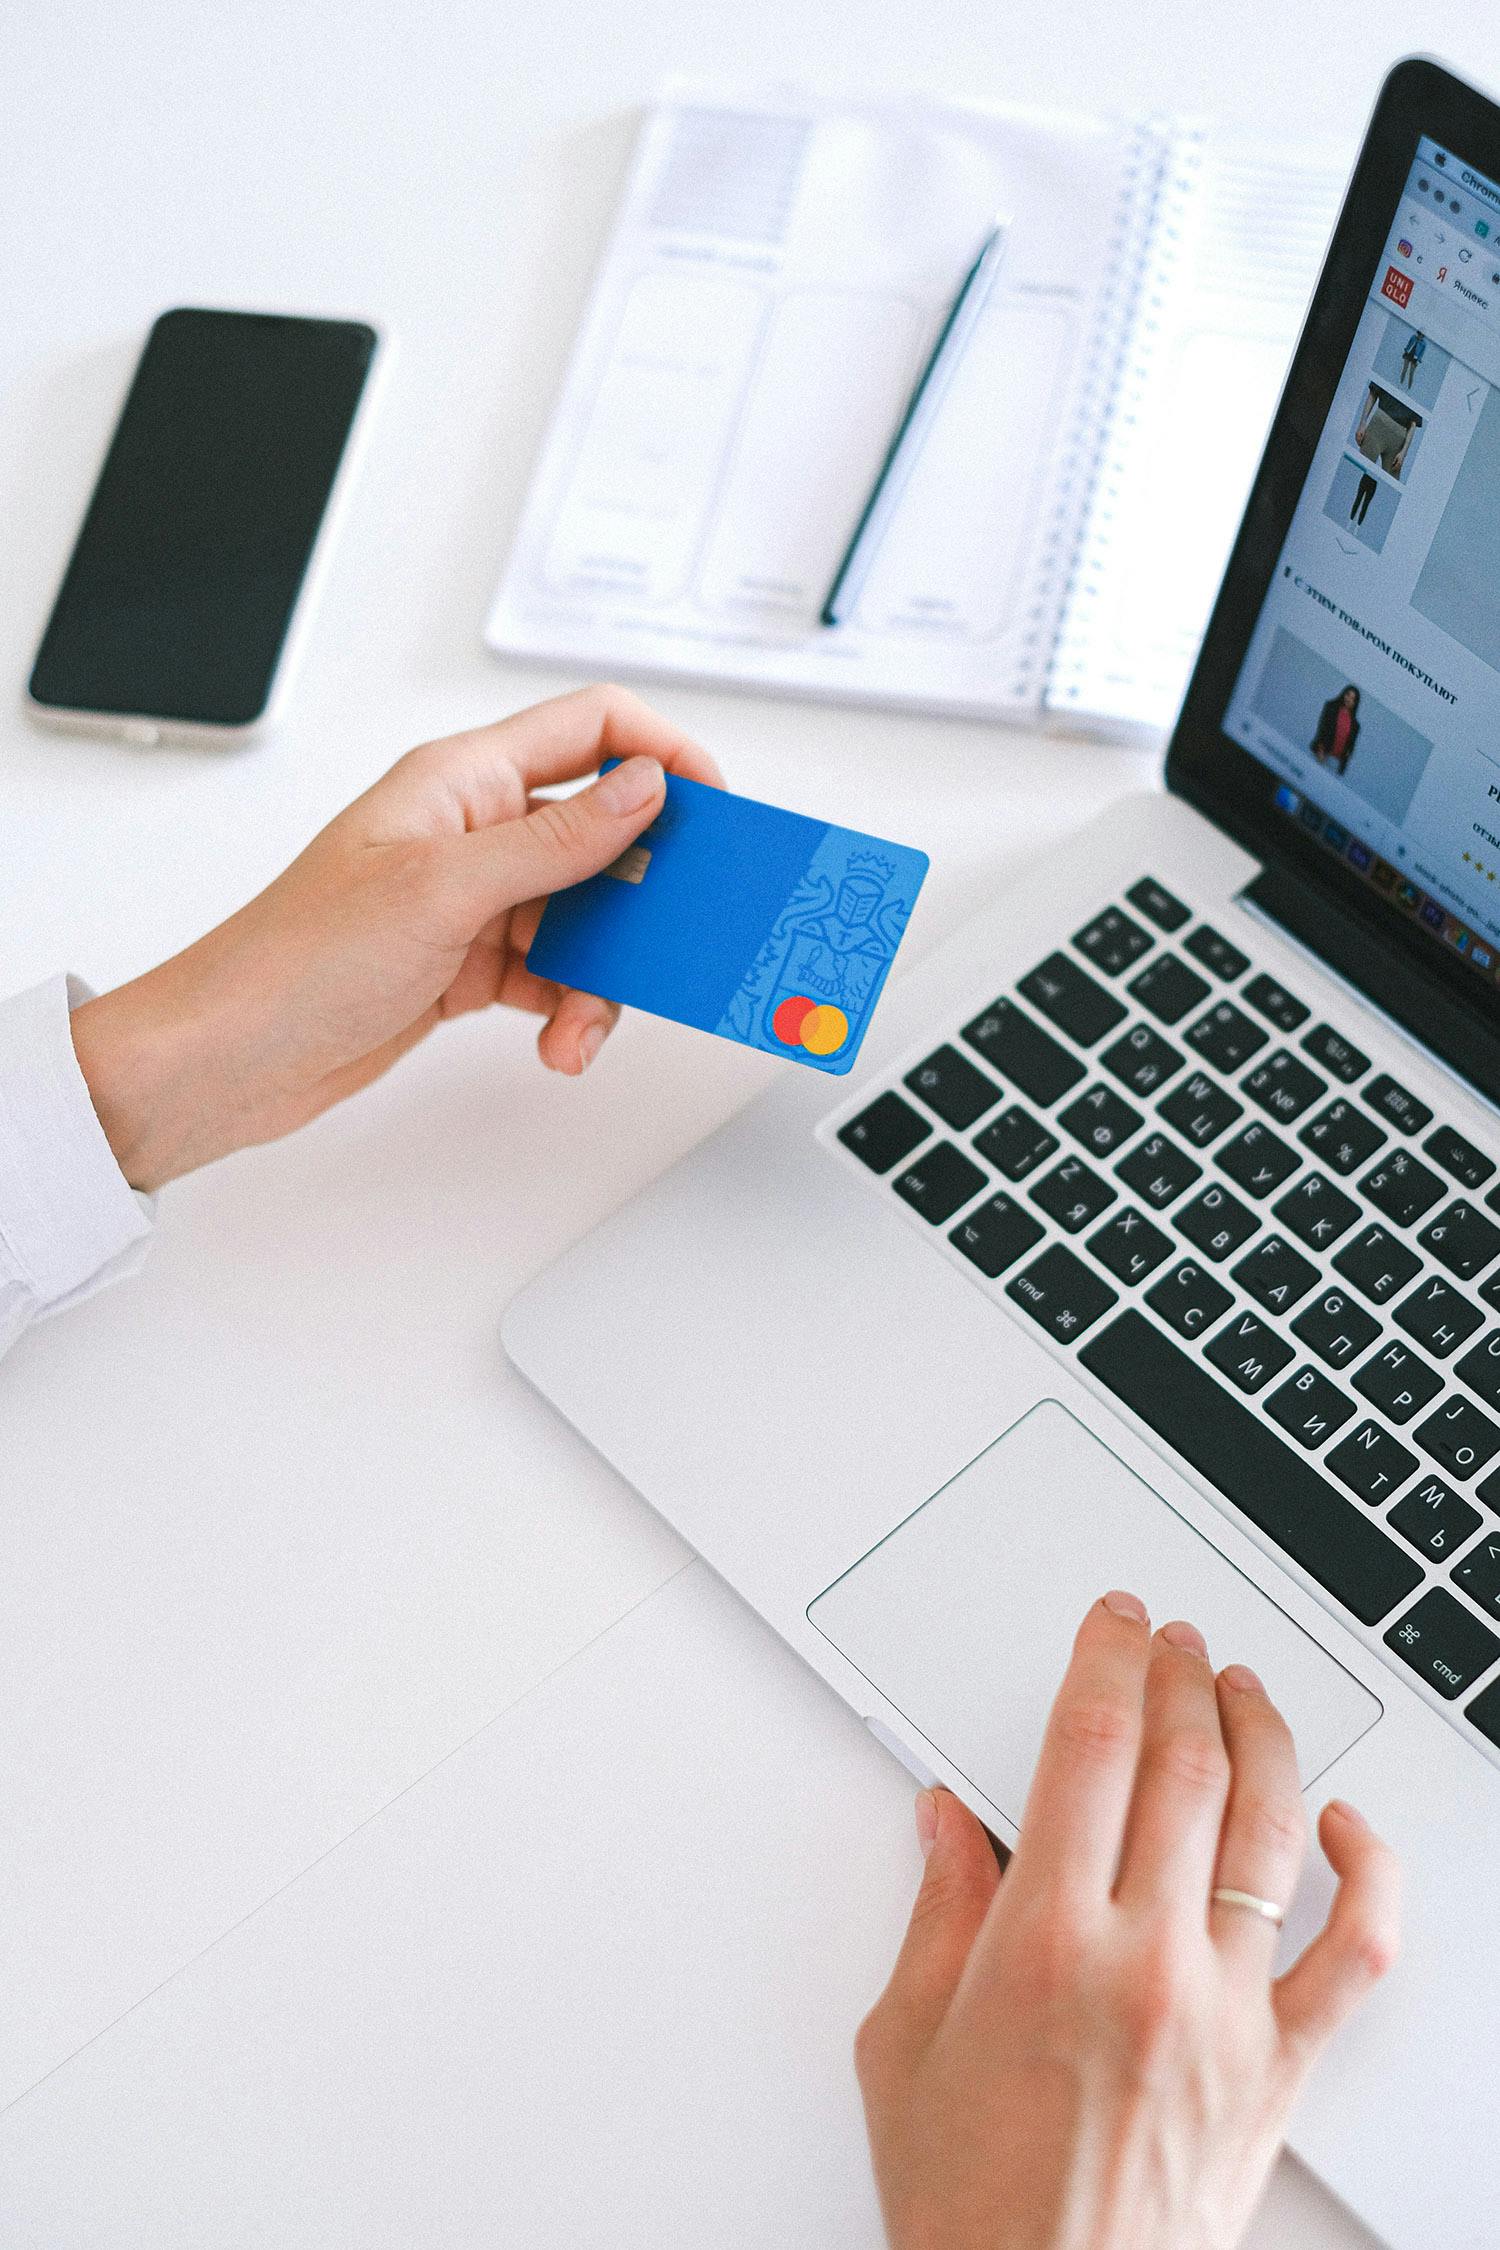 Att e-handla på nätet med sitt kreditkort framför en laptop